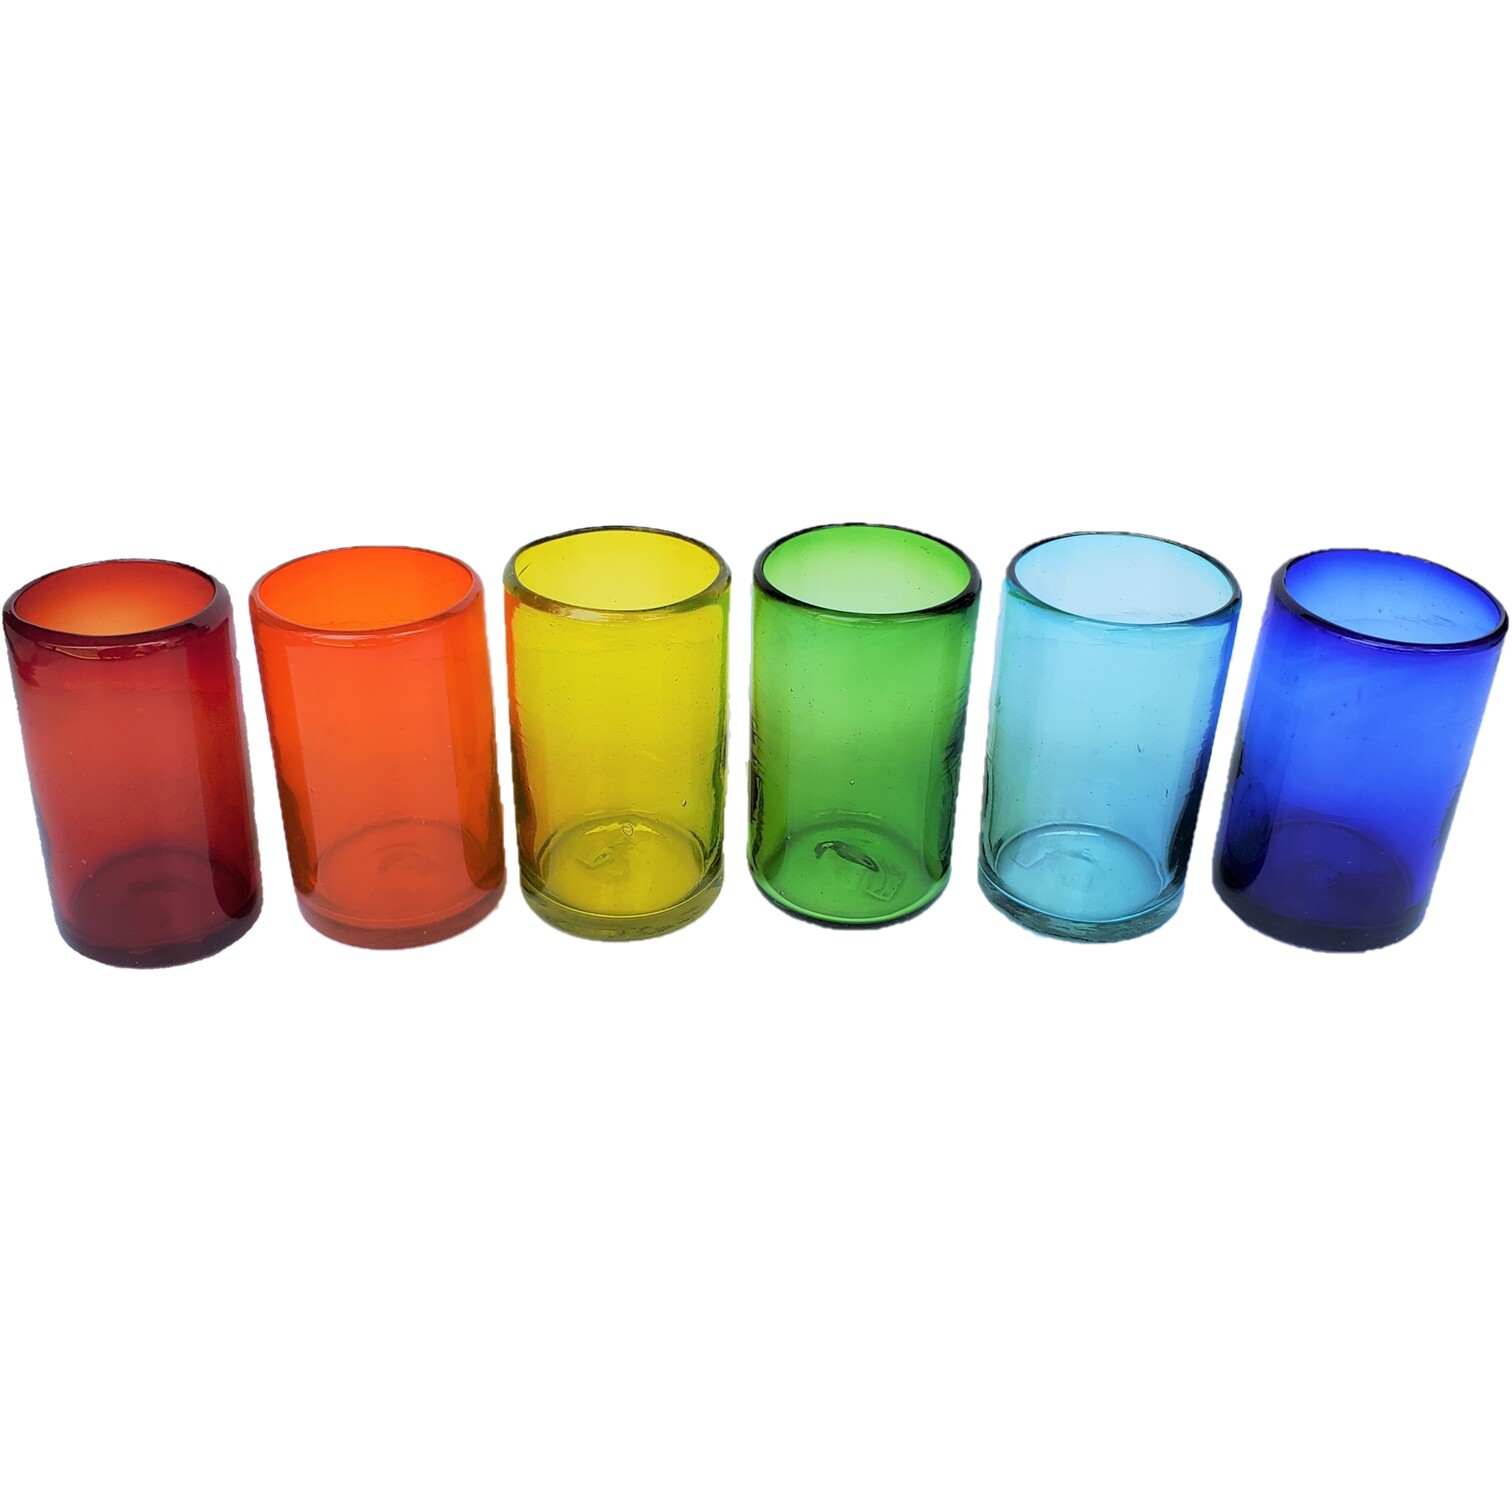 VIDRIO SOPLADO / Juego de 6 vasos grandes de colores Arcoíris / Éstos artesanales vasos le darán un toque clásico a su bebida favorita.